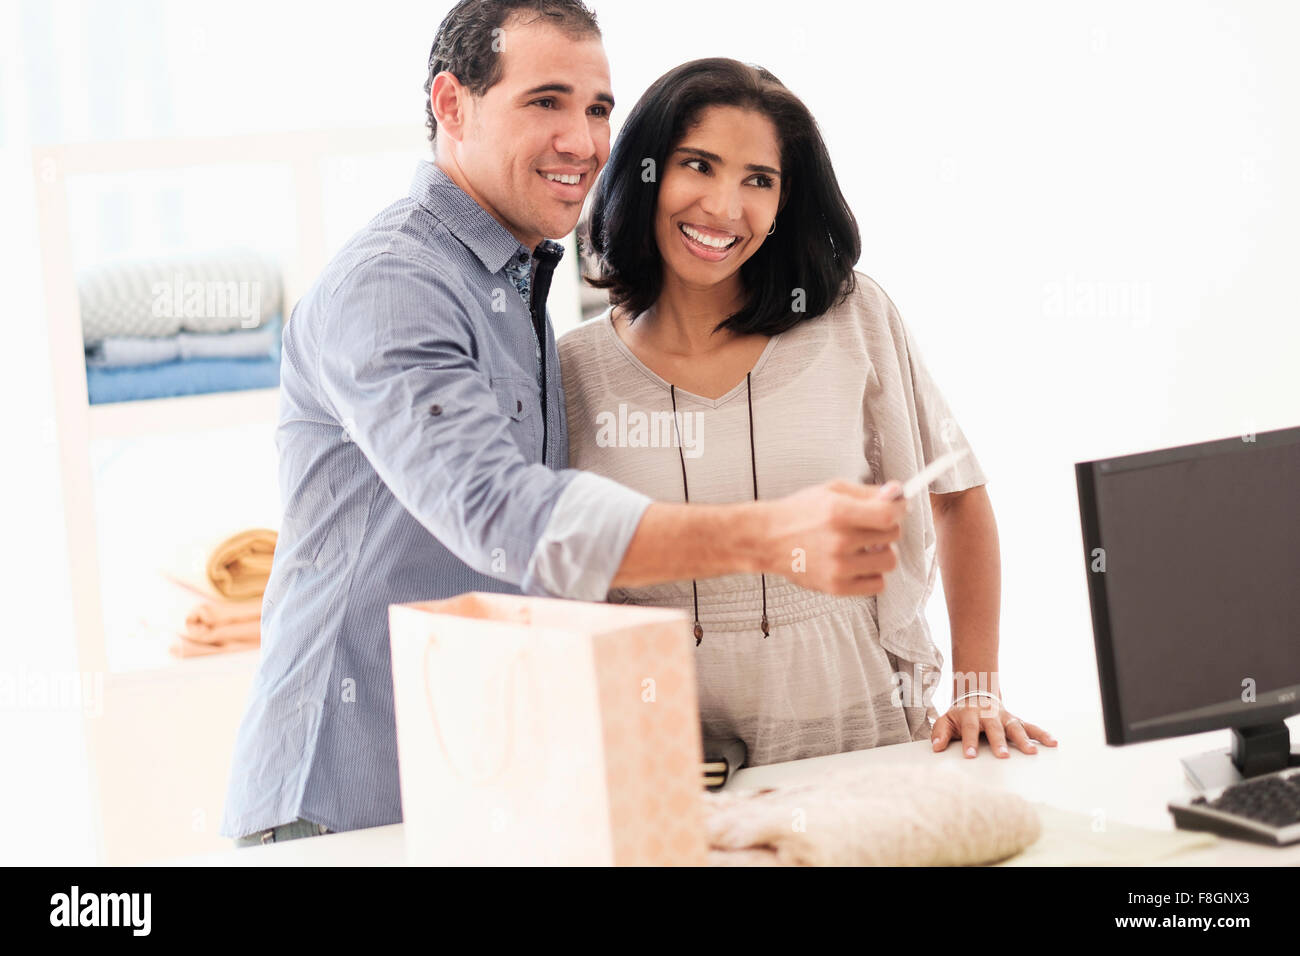 Hispanic couple paying at register Stock Photo